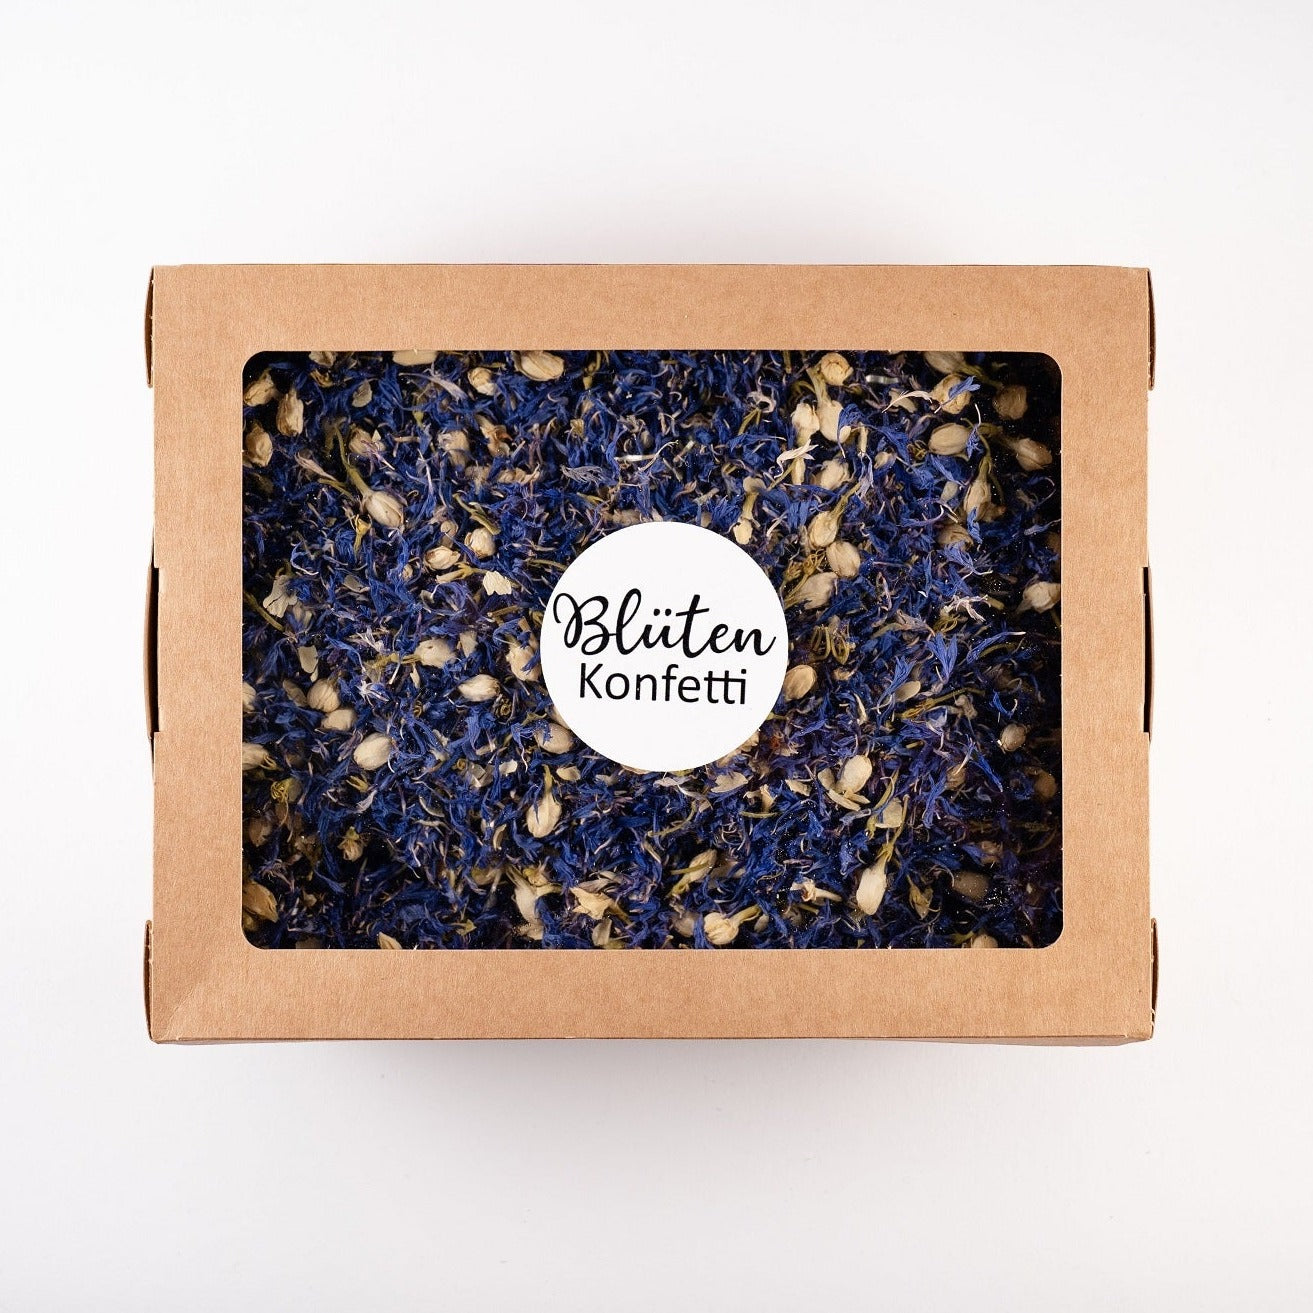 Blütenkonfetti Blue Ivory in der Box